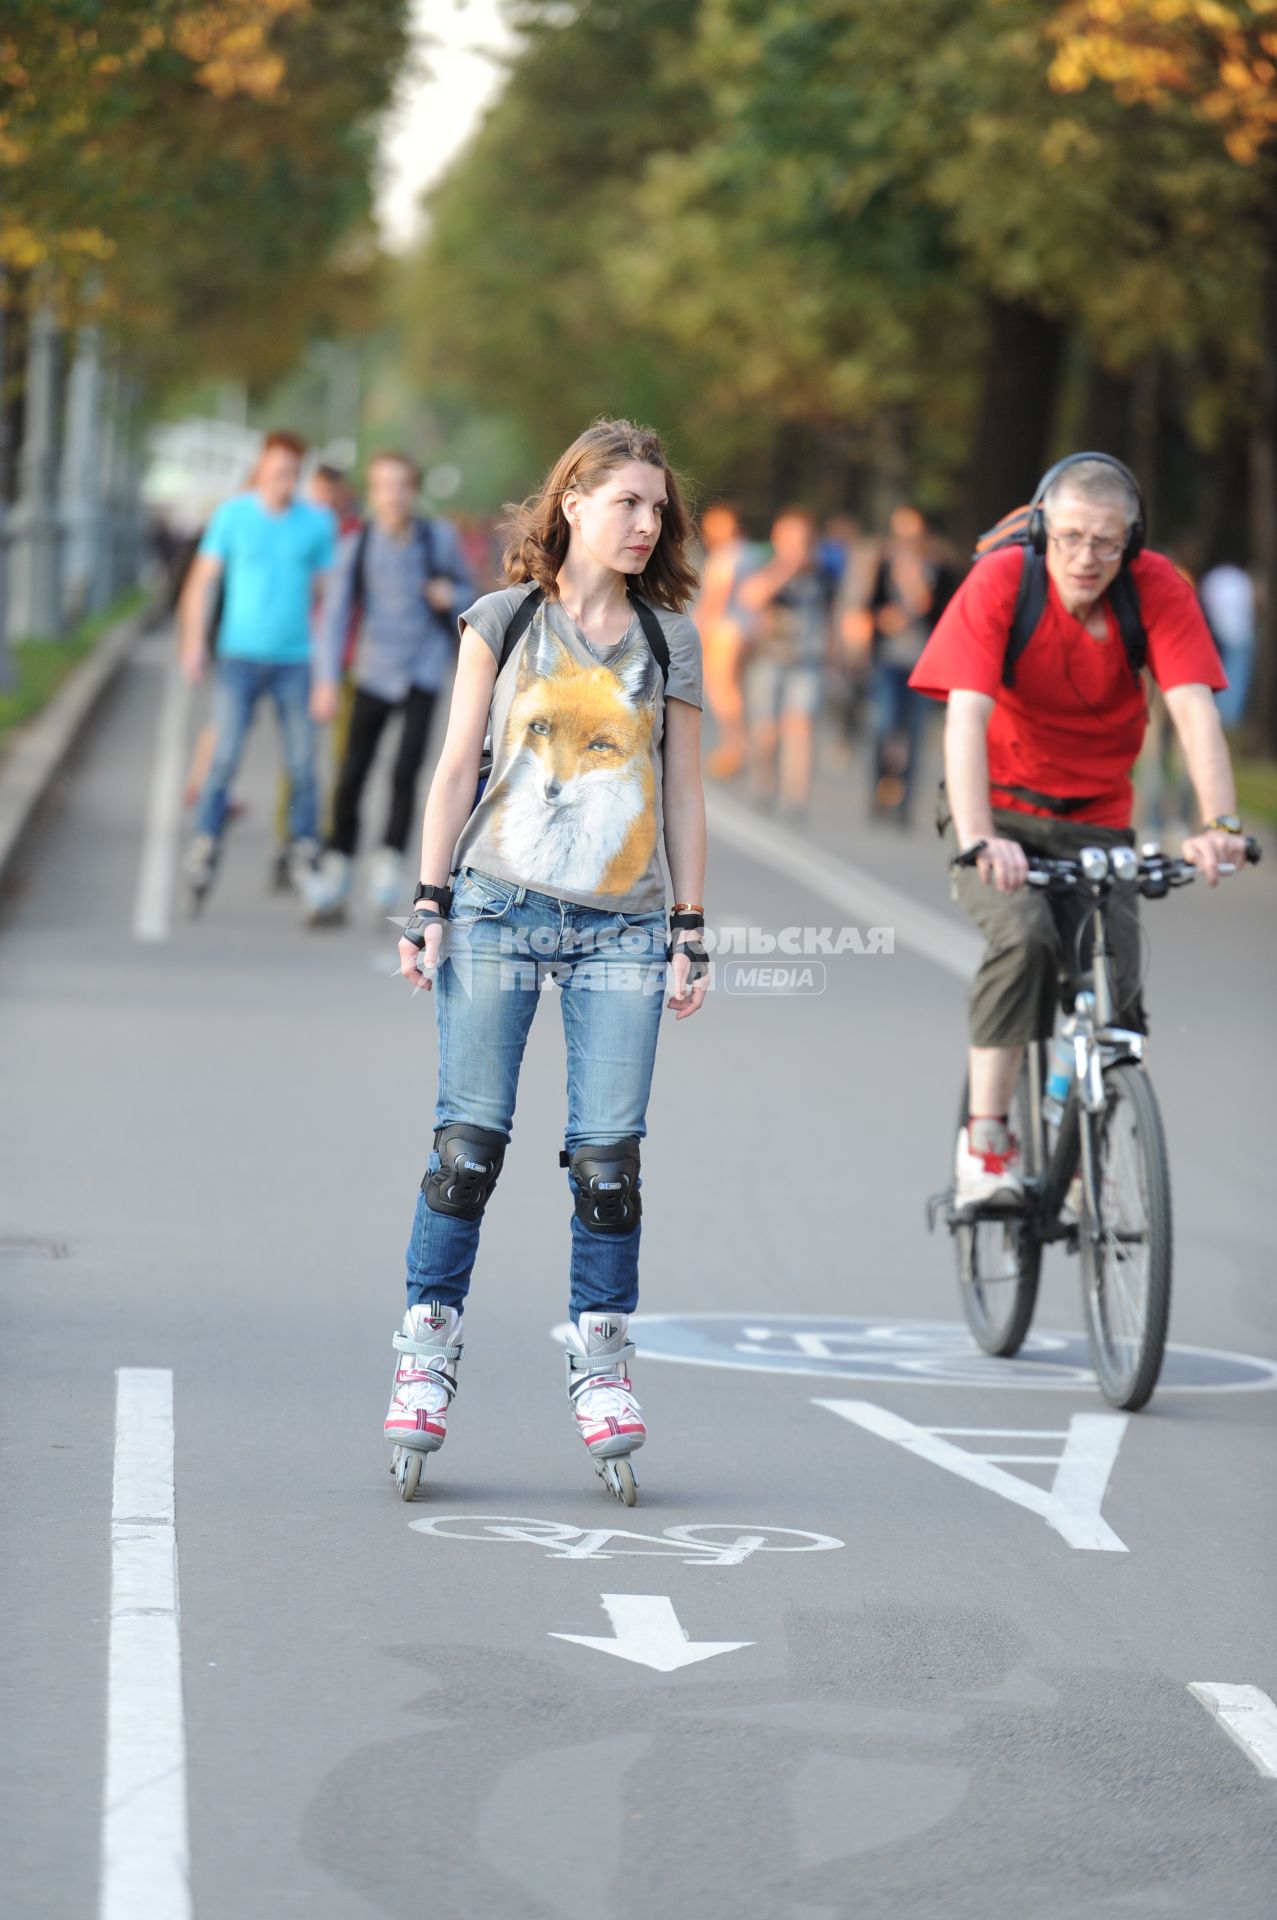 Парк Горького. На снимке: девушка на роликах и мужчина на велосипеде.